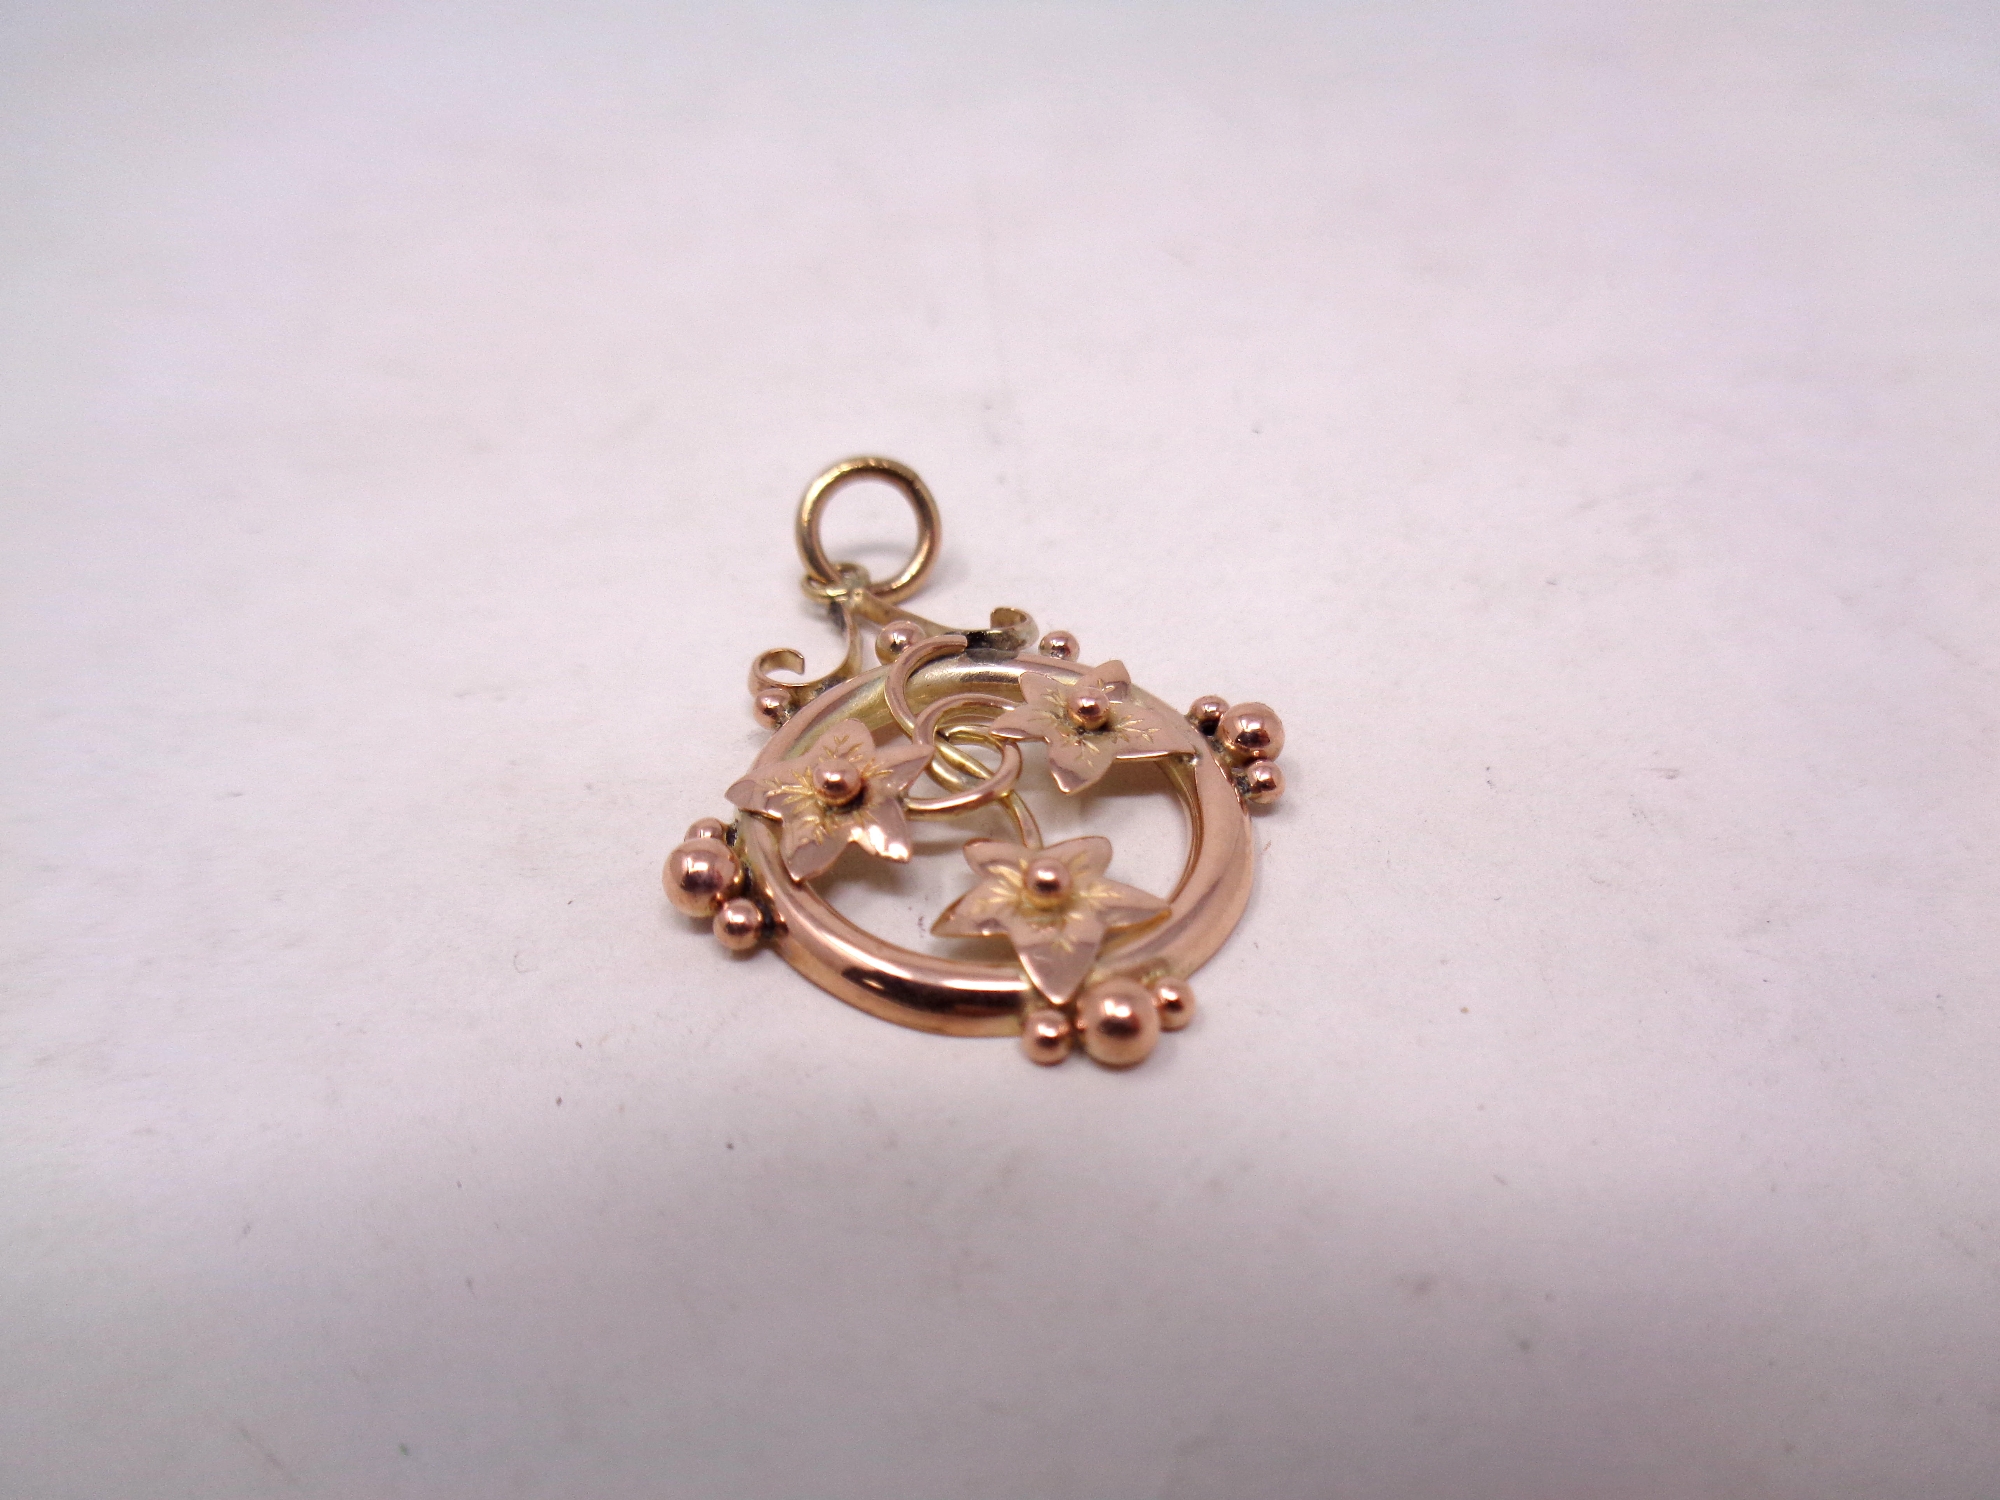 A 9ct gold vintage pendant, 1.